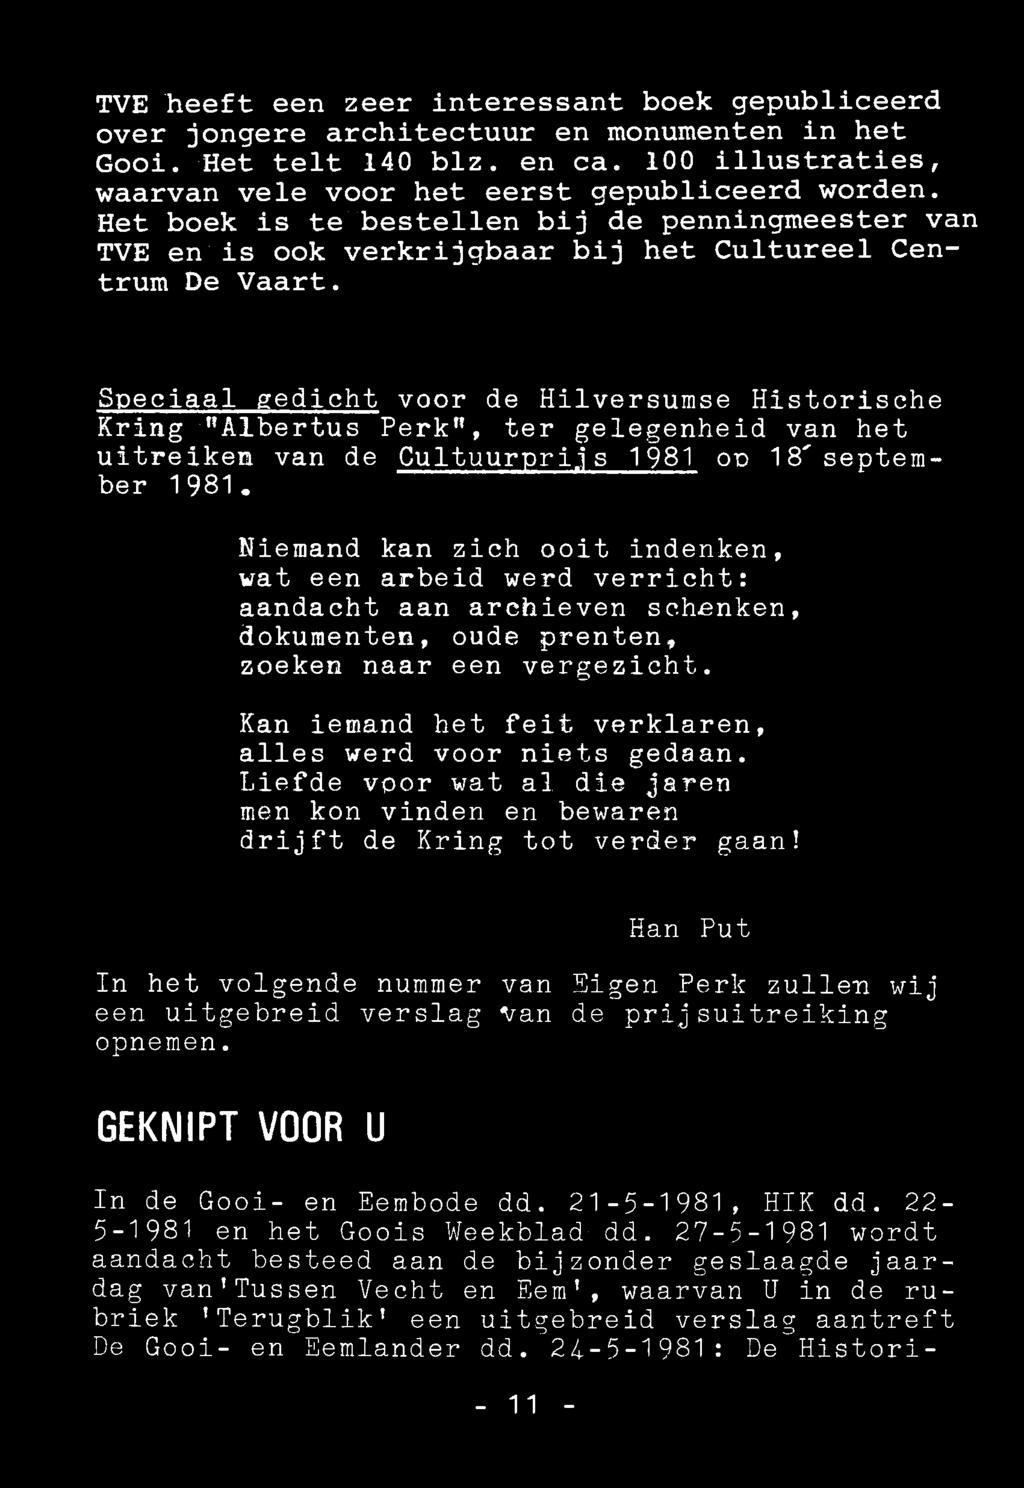 Speciaal gedicht voor de Hilversumse Historische Kring "Albertus Perk", ter gelegenheid van het uitreiken van de Cultuurprijs 1981 oo 18'september 1981.